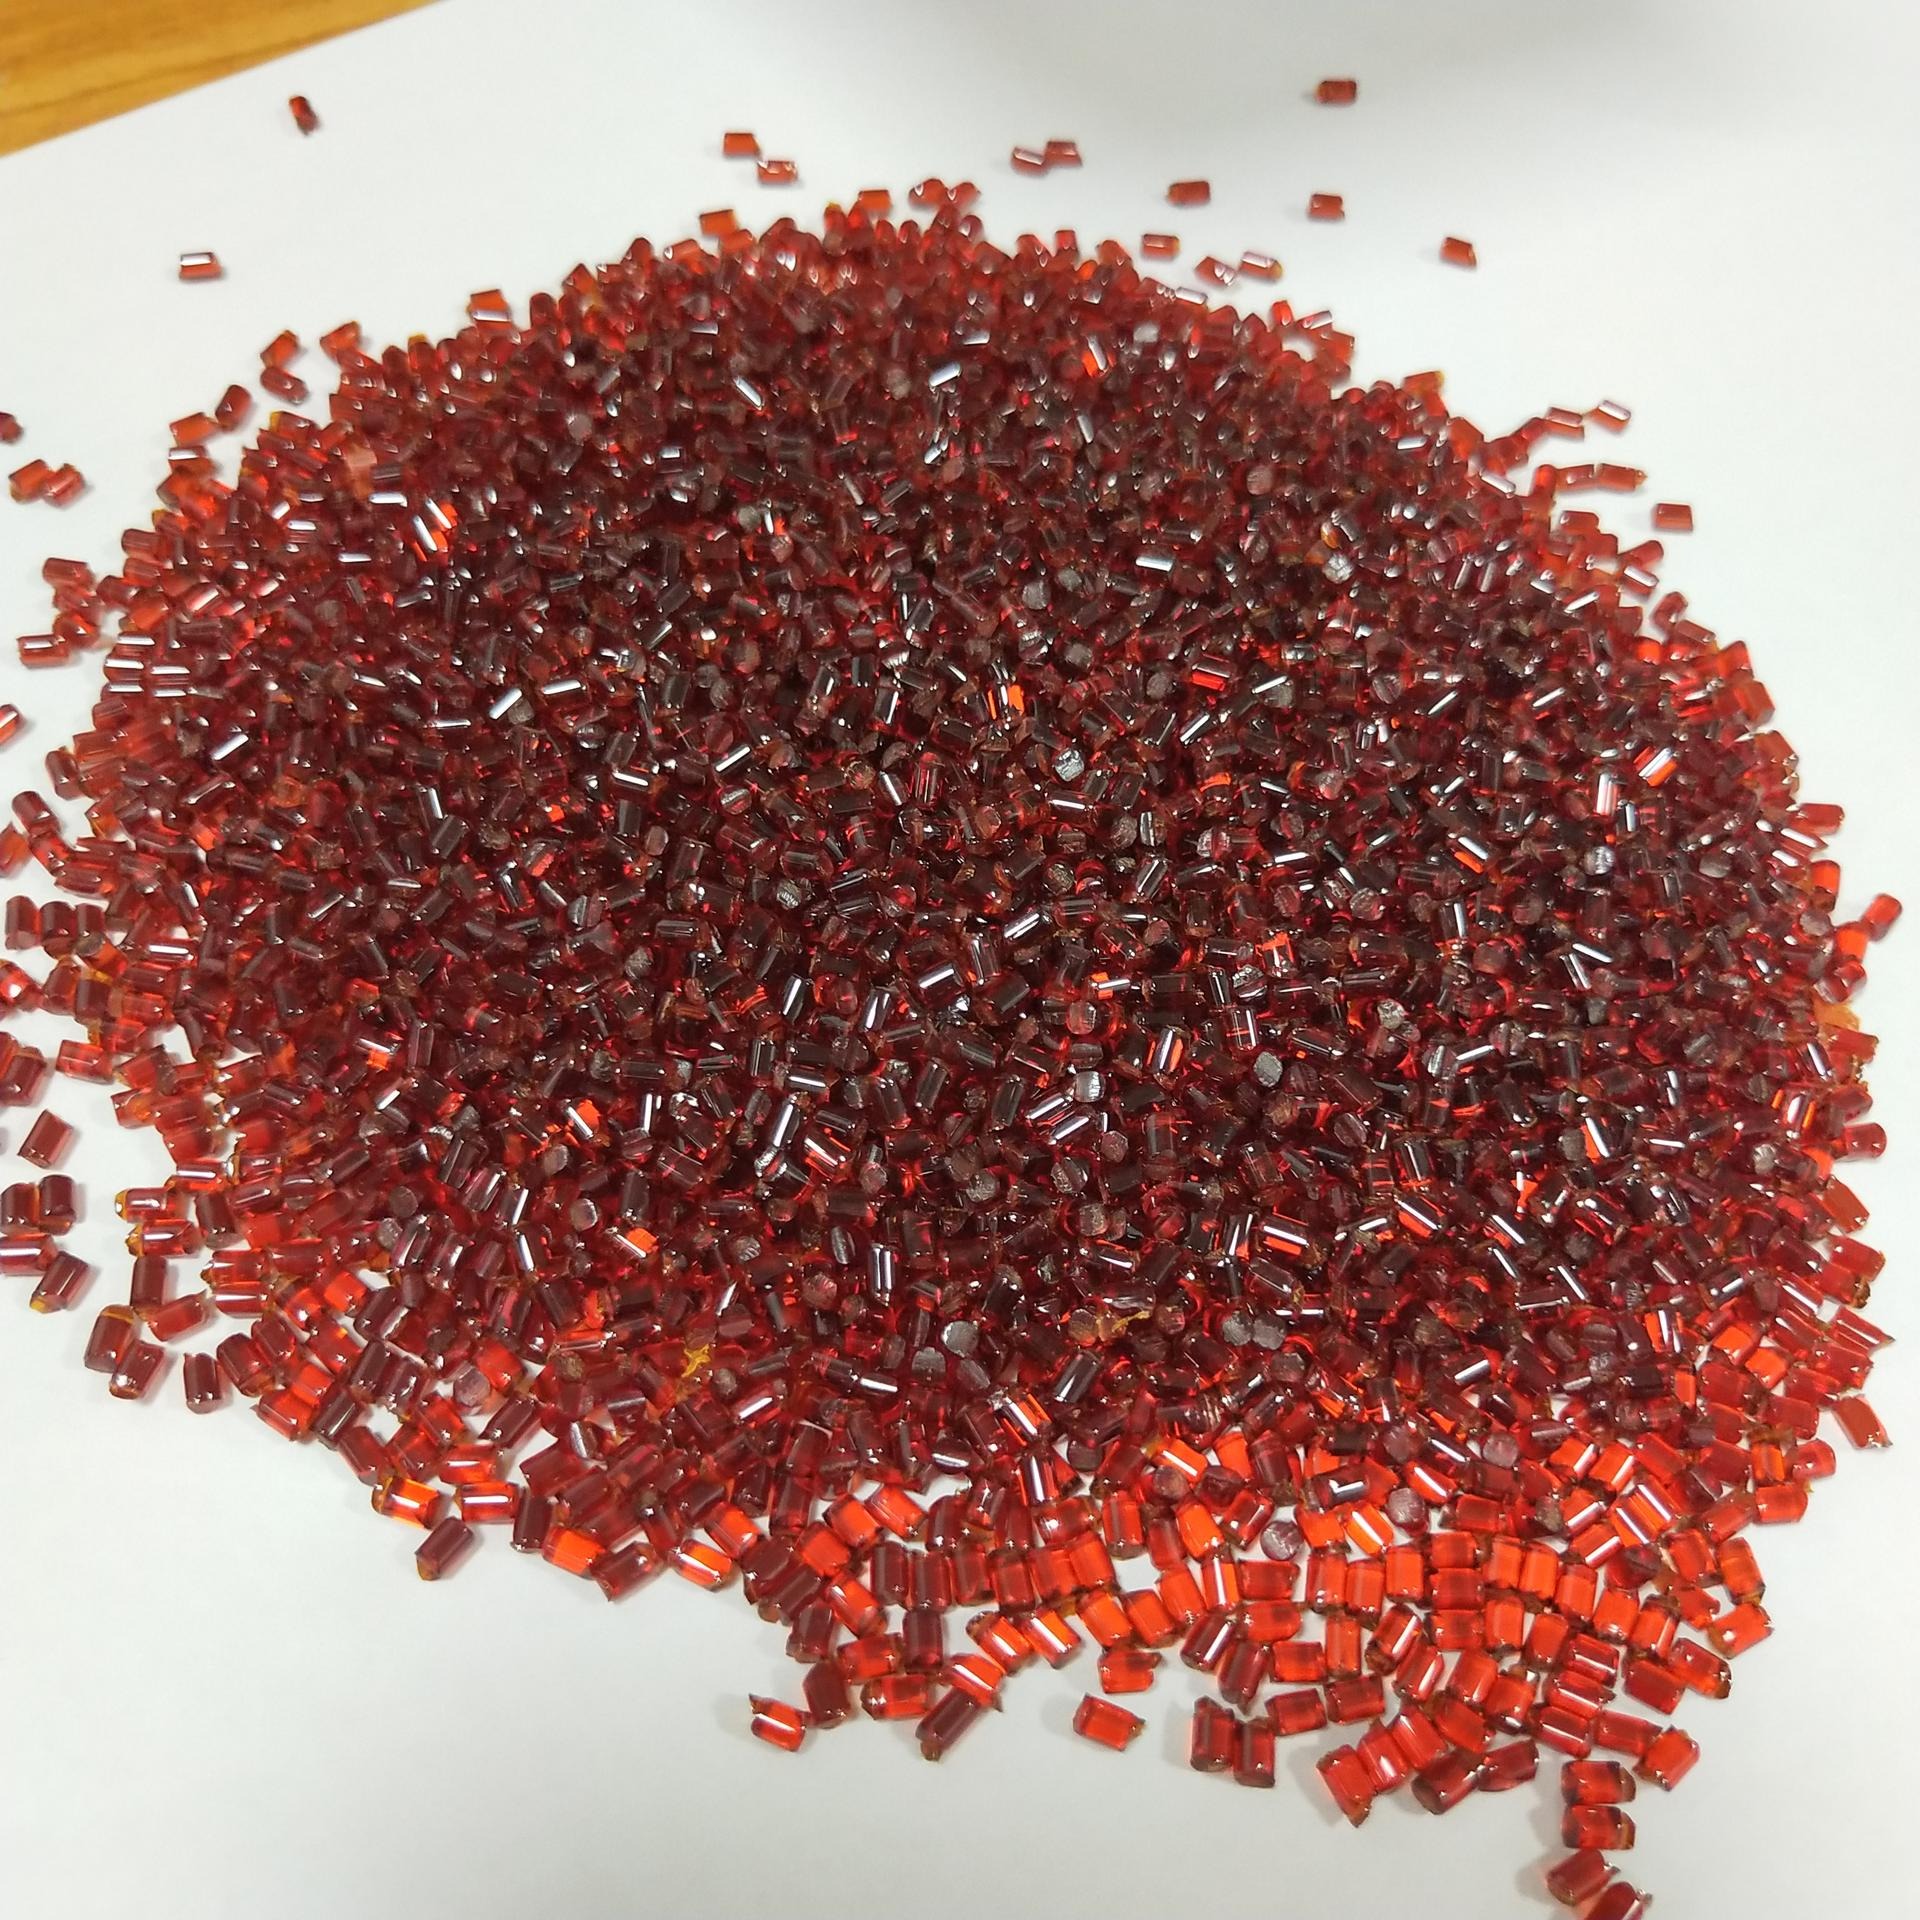 酒红色的PI特种塑料  PL450A 聚酰亚胺塑料   低价处理PI纯树脂   日本三井化PI图片